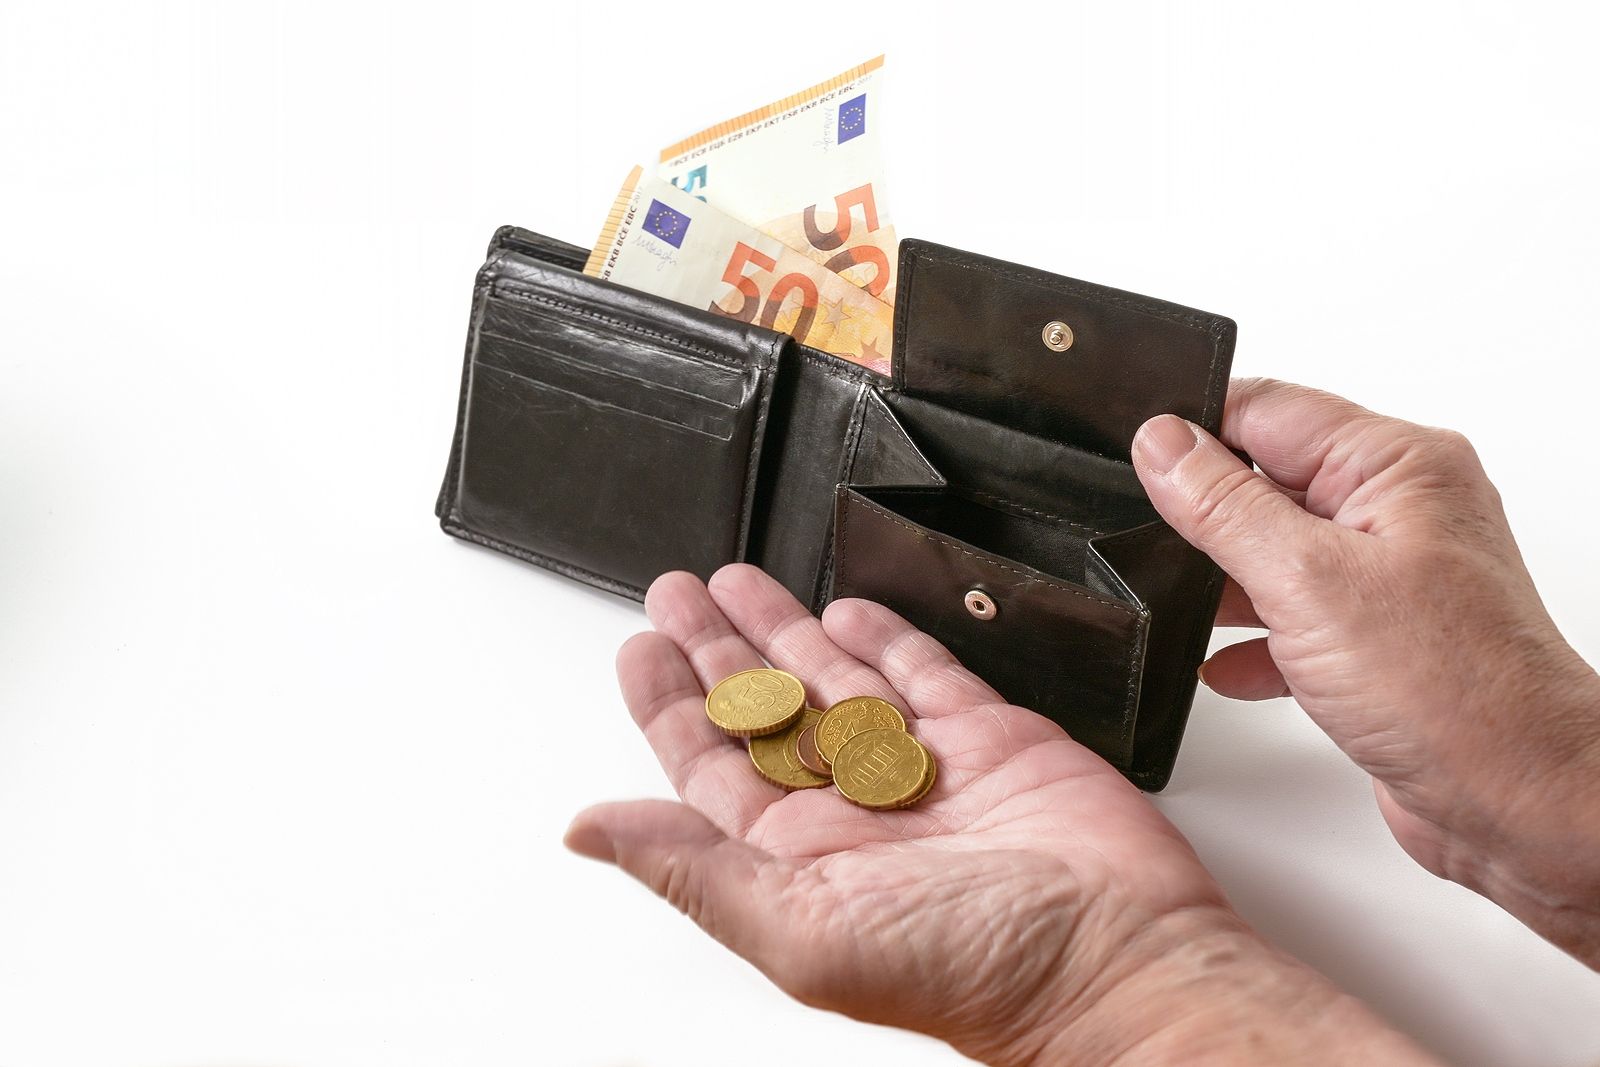 La pensión de viudedad y la de autónomos, casi 200€ por debajo del SMI, pese a la subida del 8,5%